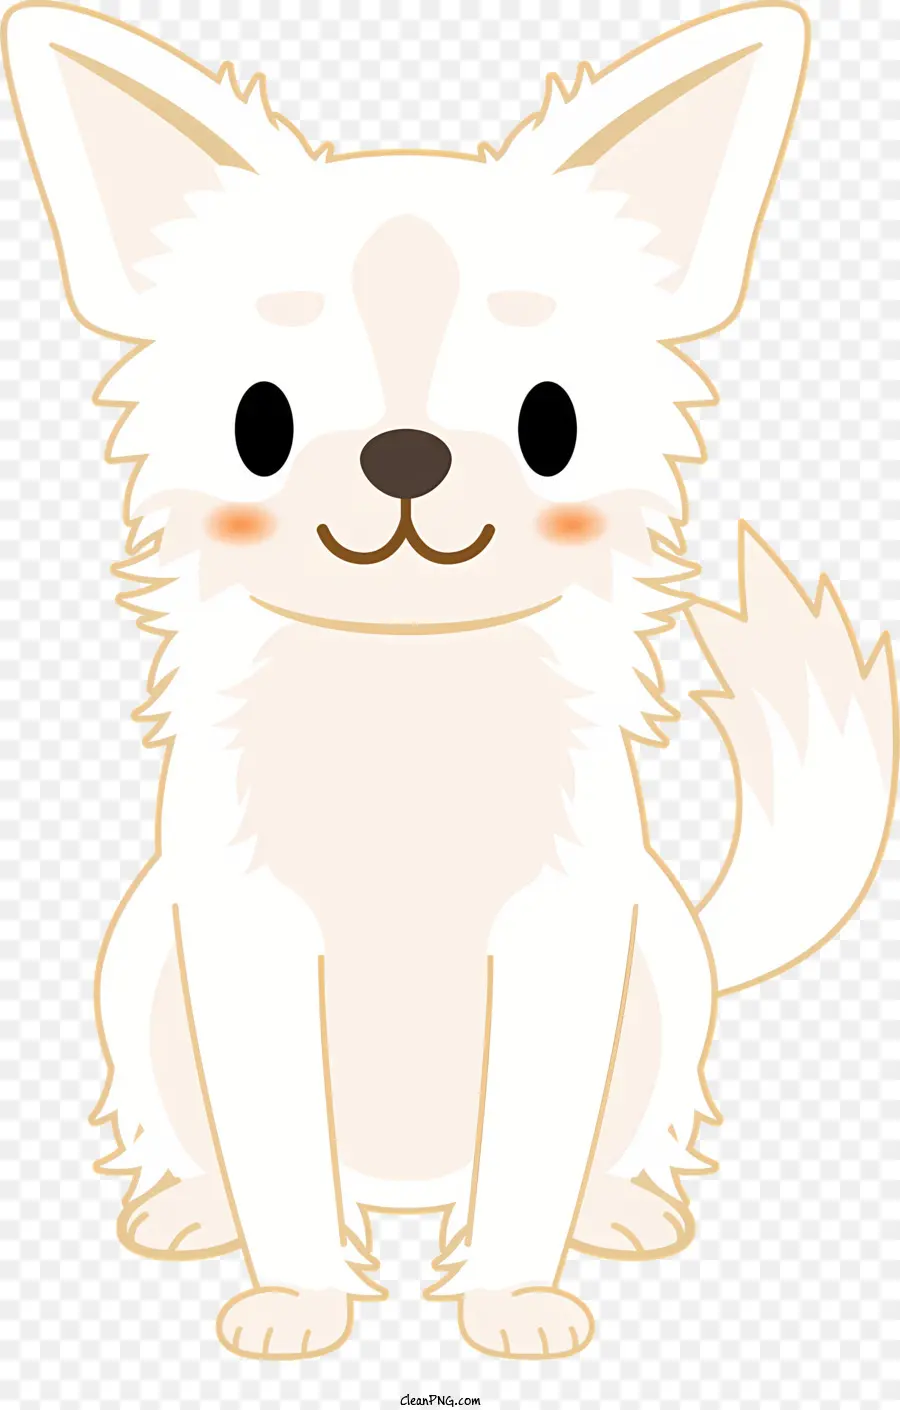 cartoon Hund - Weißer flauschiger Hund mit großem Lächeln sitzt